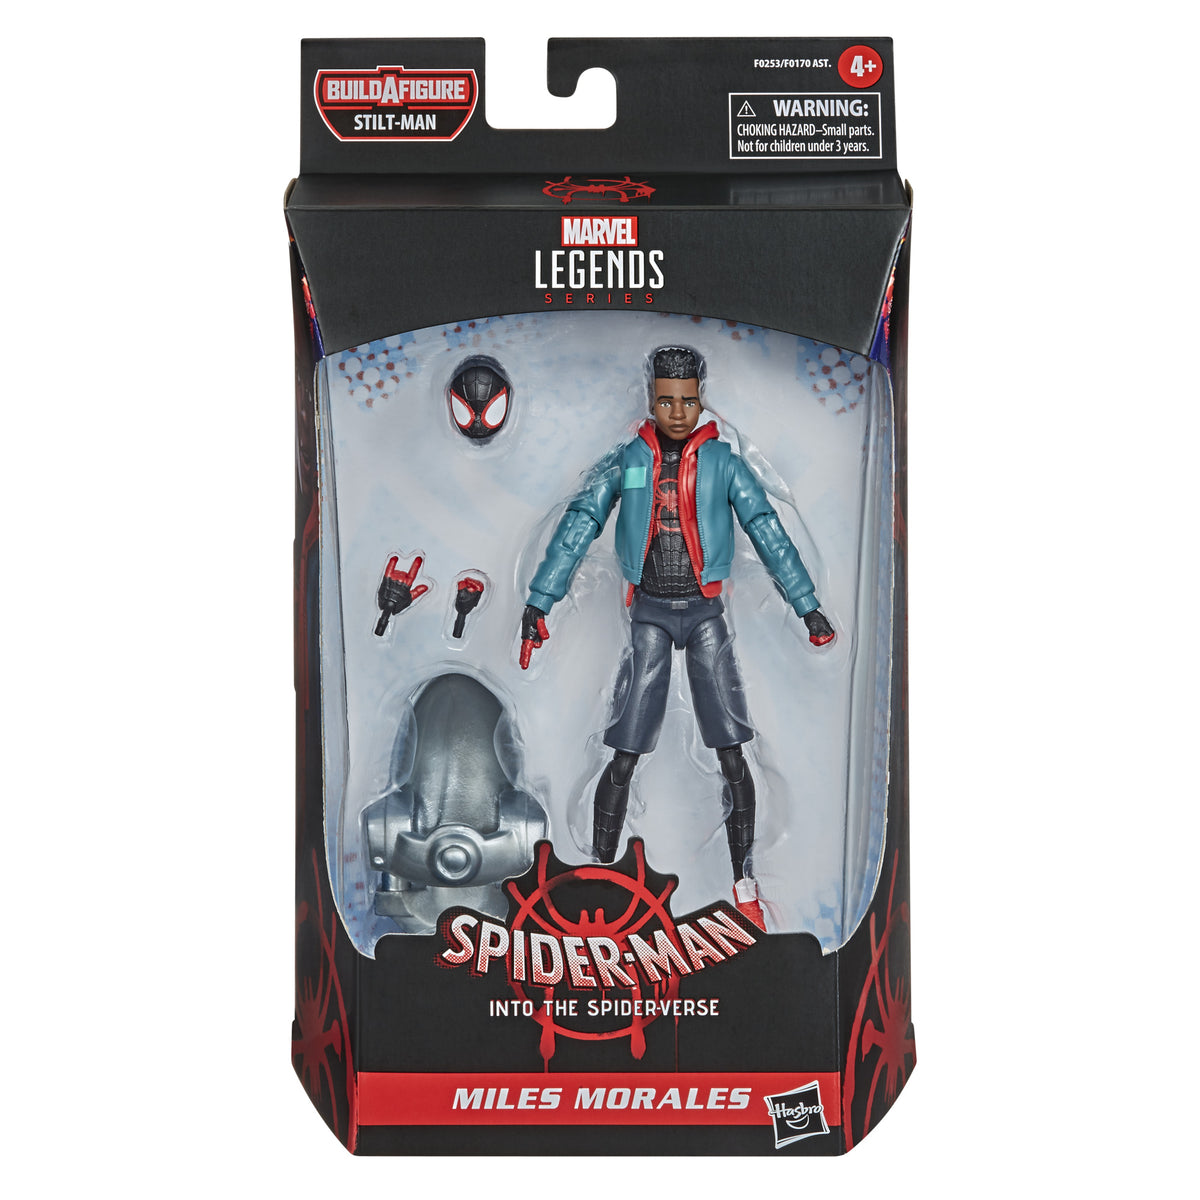 Marvel Legends Gamerverse Spider-Man – Hasbro Pulse